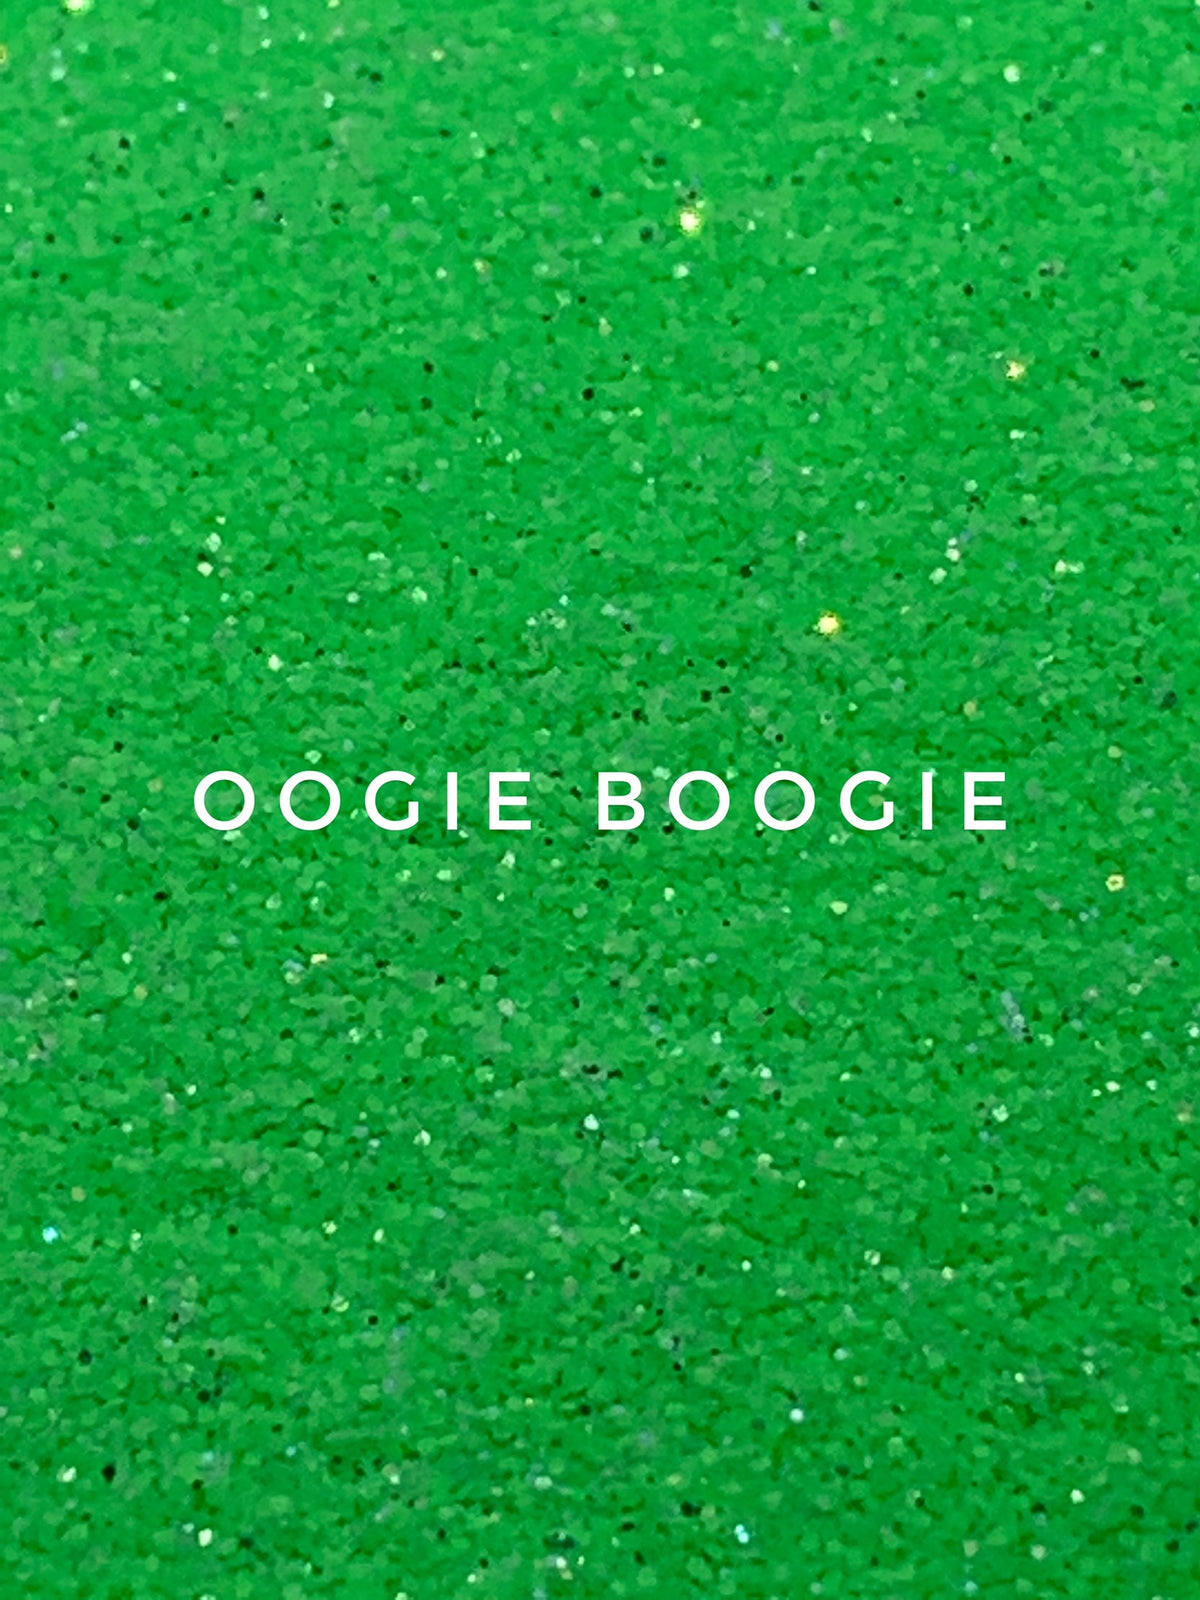 Oogie Boogie - Green Glow